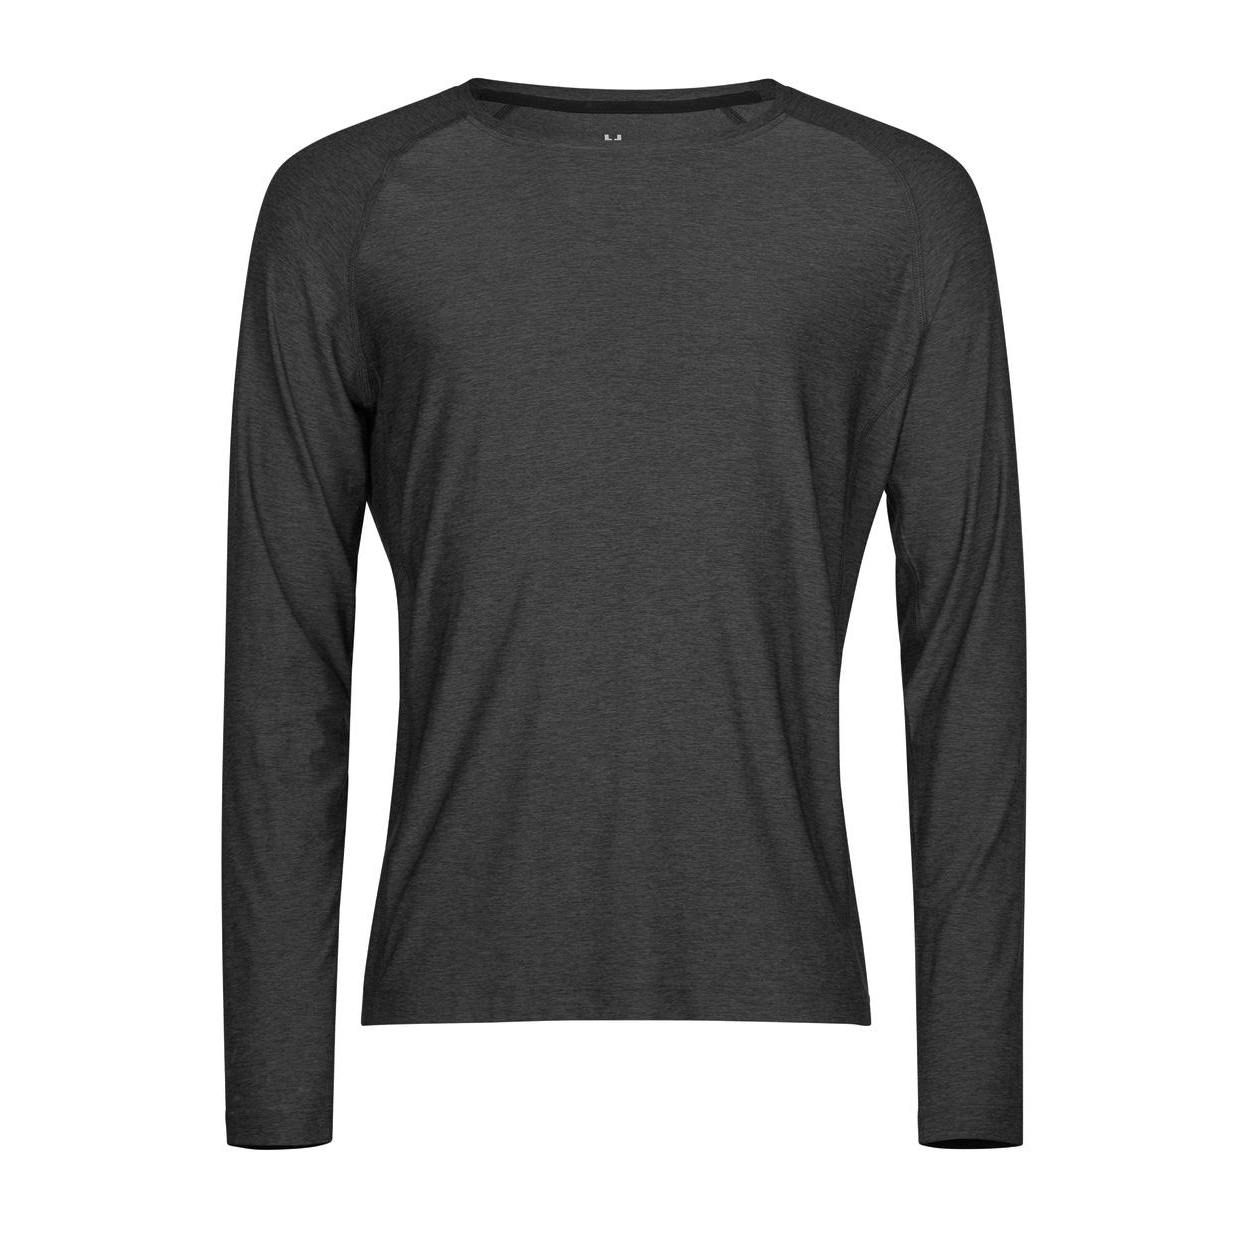 Triko pánské Stedman Tee Jays CoolDry tričko s dlouhými rukávy - tmavě šedé, 3XL